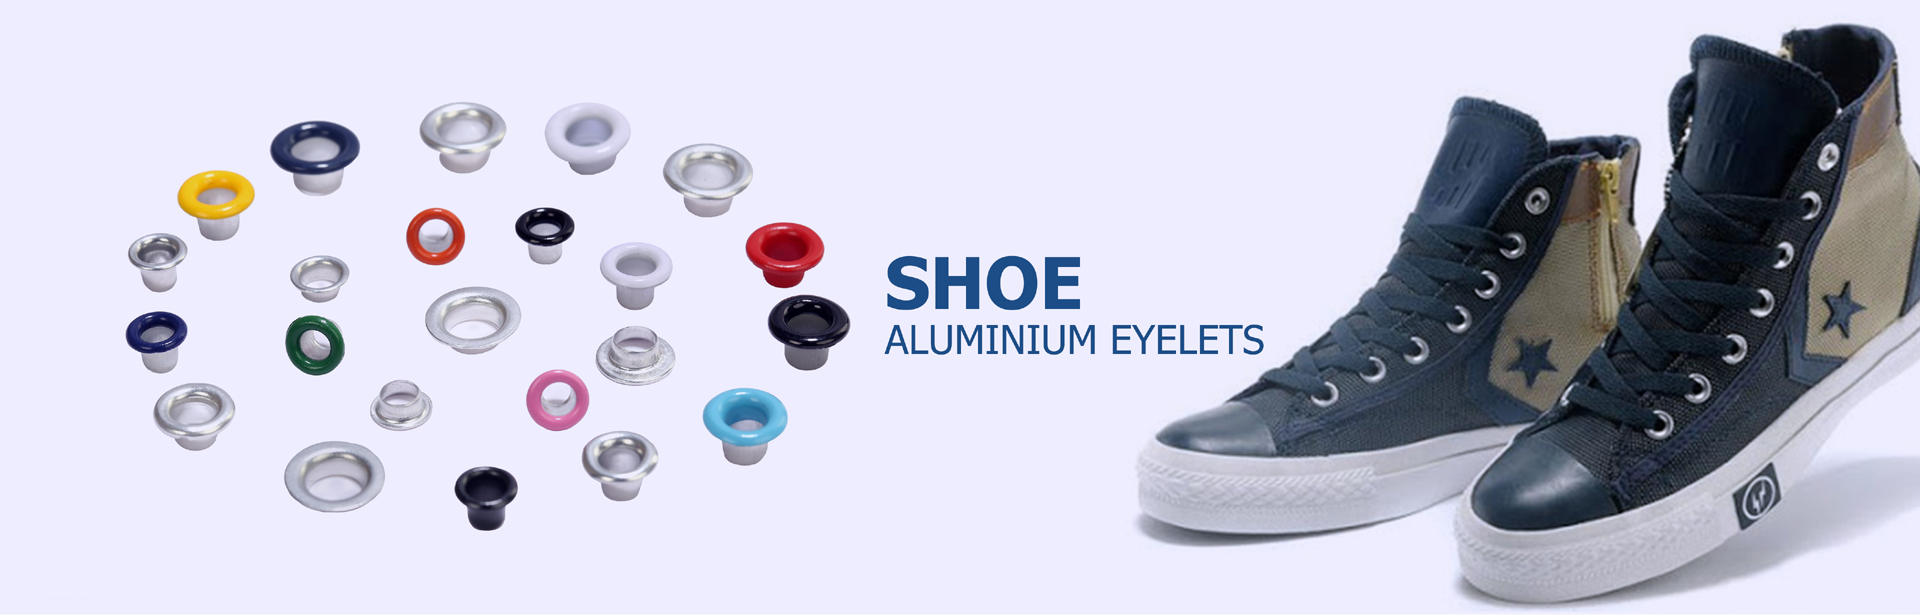 Shoe Aluminium Eyelets